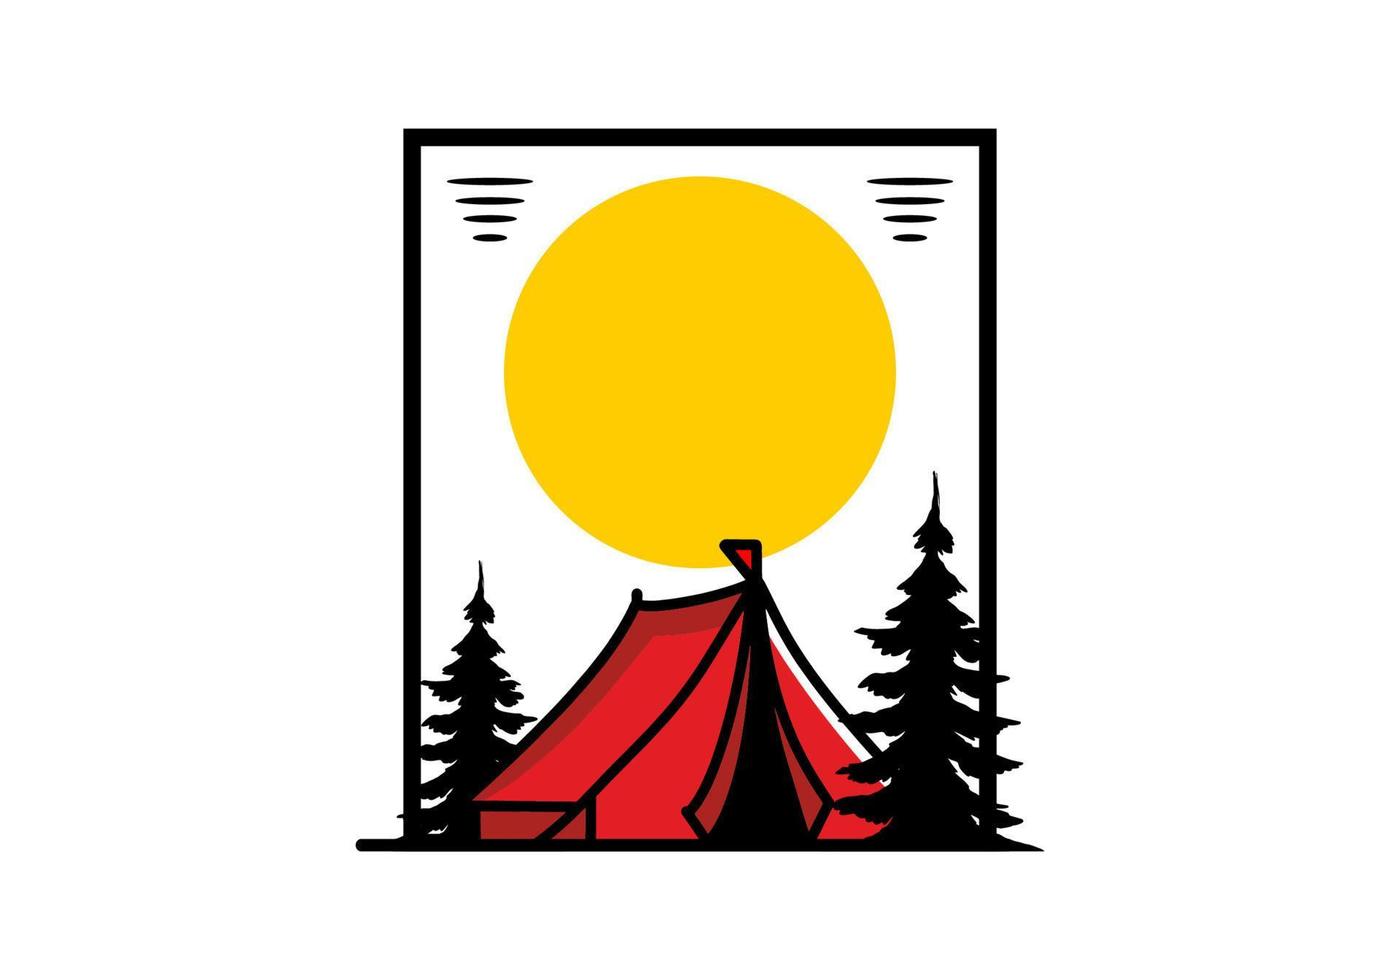 conception d'illustration de grande tente de camping vecteur